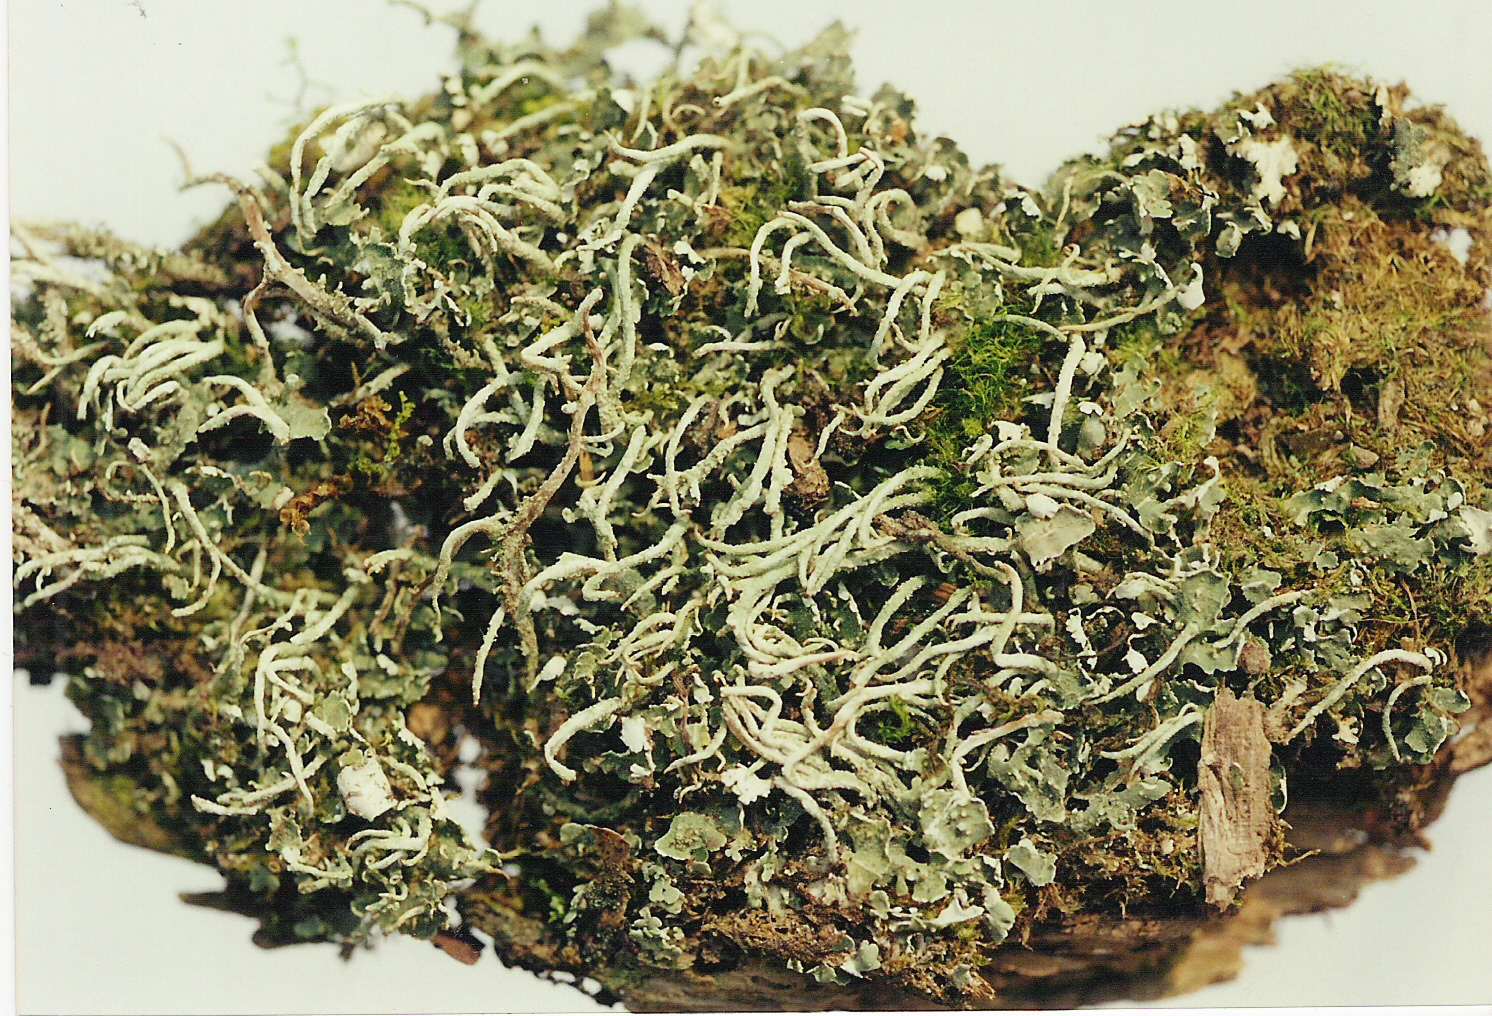 foliose lichen under microscope